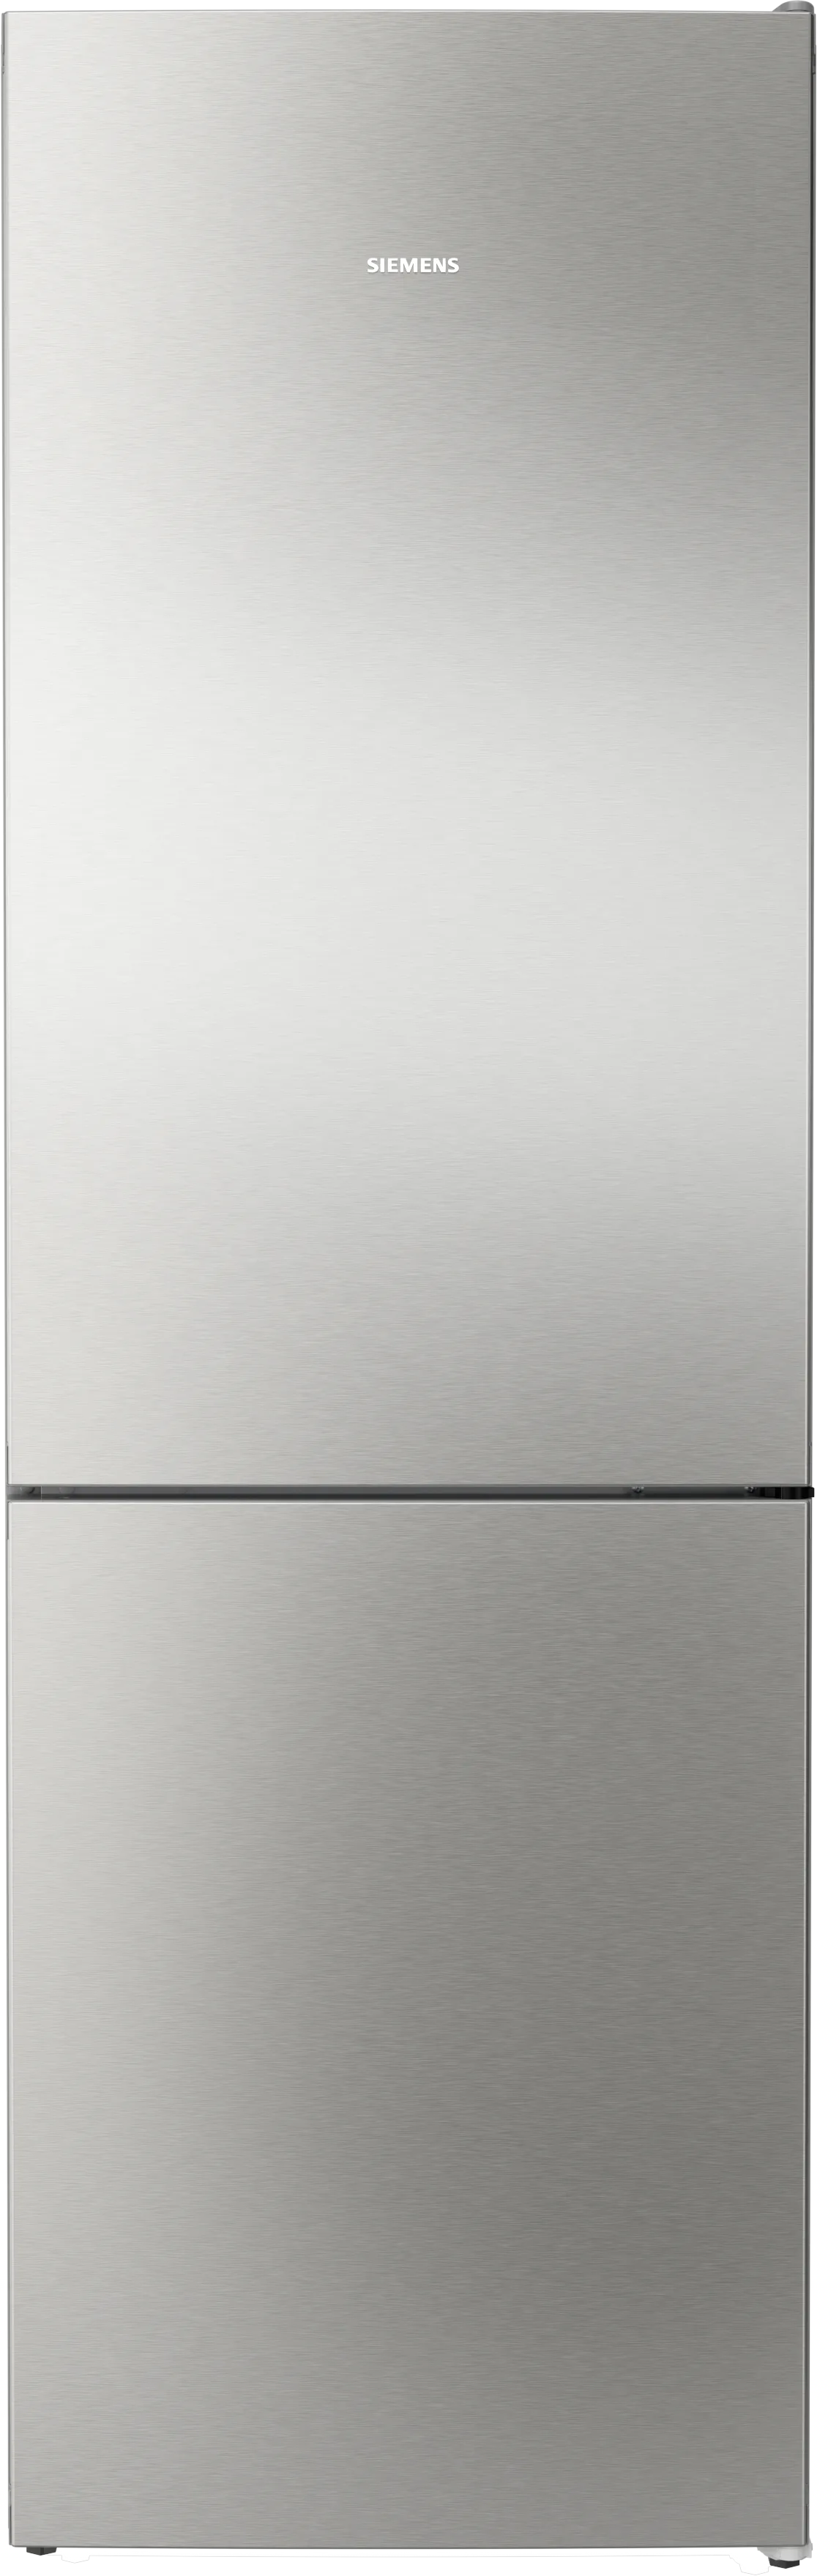 iQ300 Freistehende Kühl-Gefrier-Kombination mit Gefrierbereich unten 186 x 60 cm Edelstahl (mit Antifingerprint) 